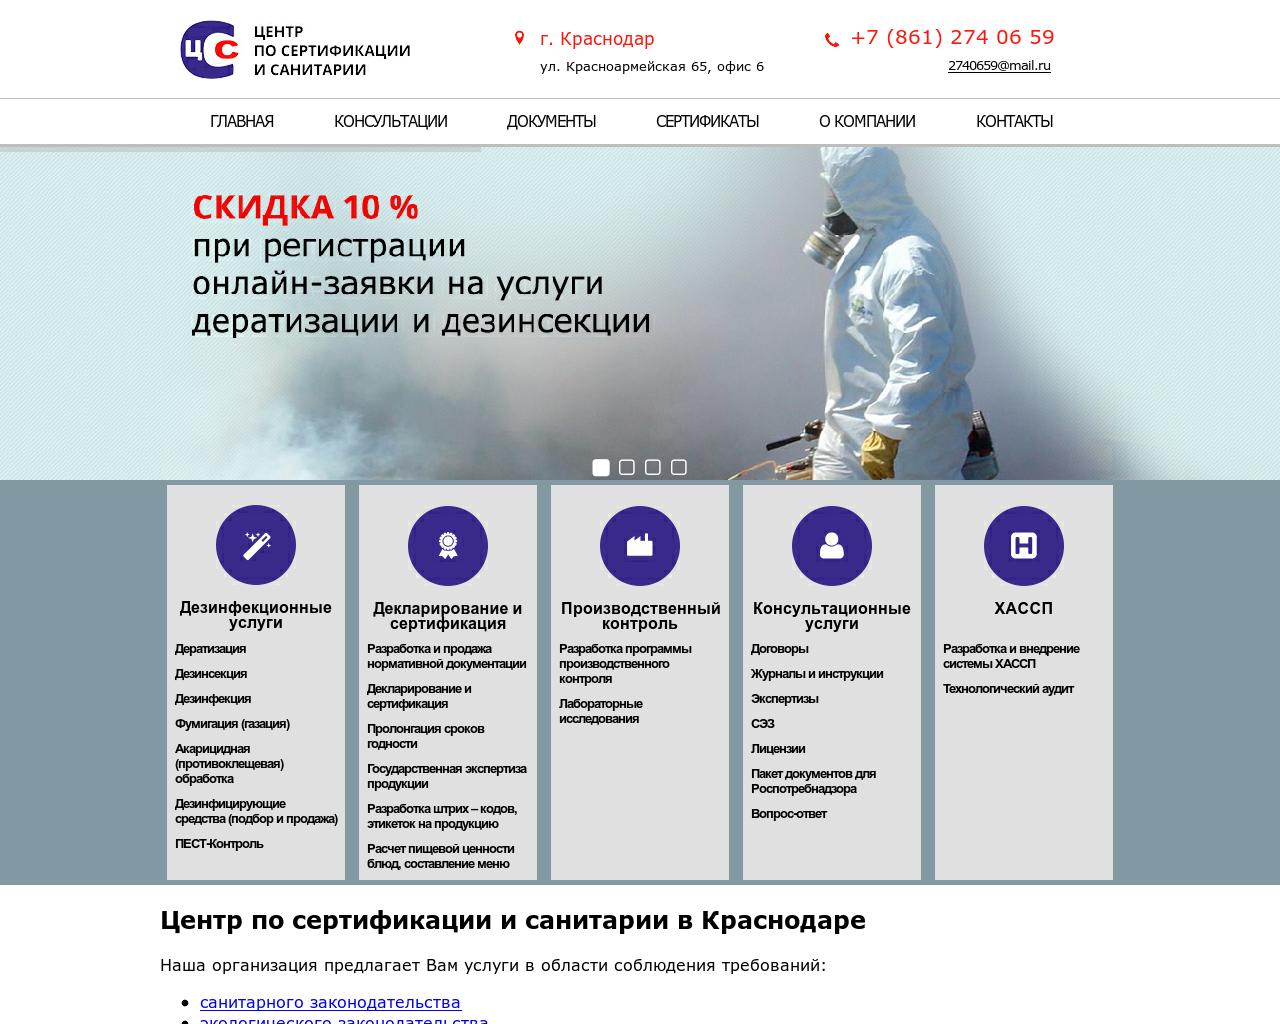 Изображение сайта css23.ru в разрешении 1280x1024